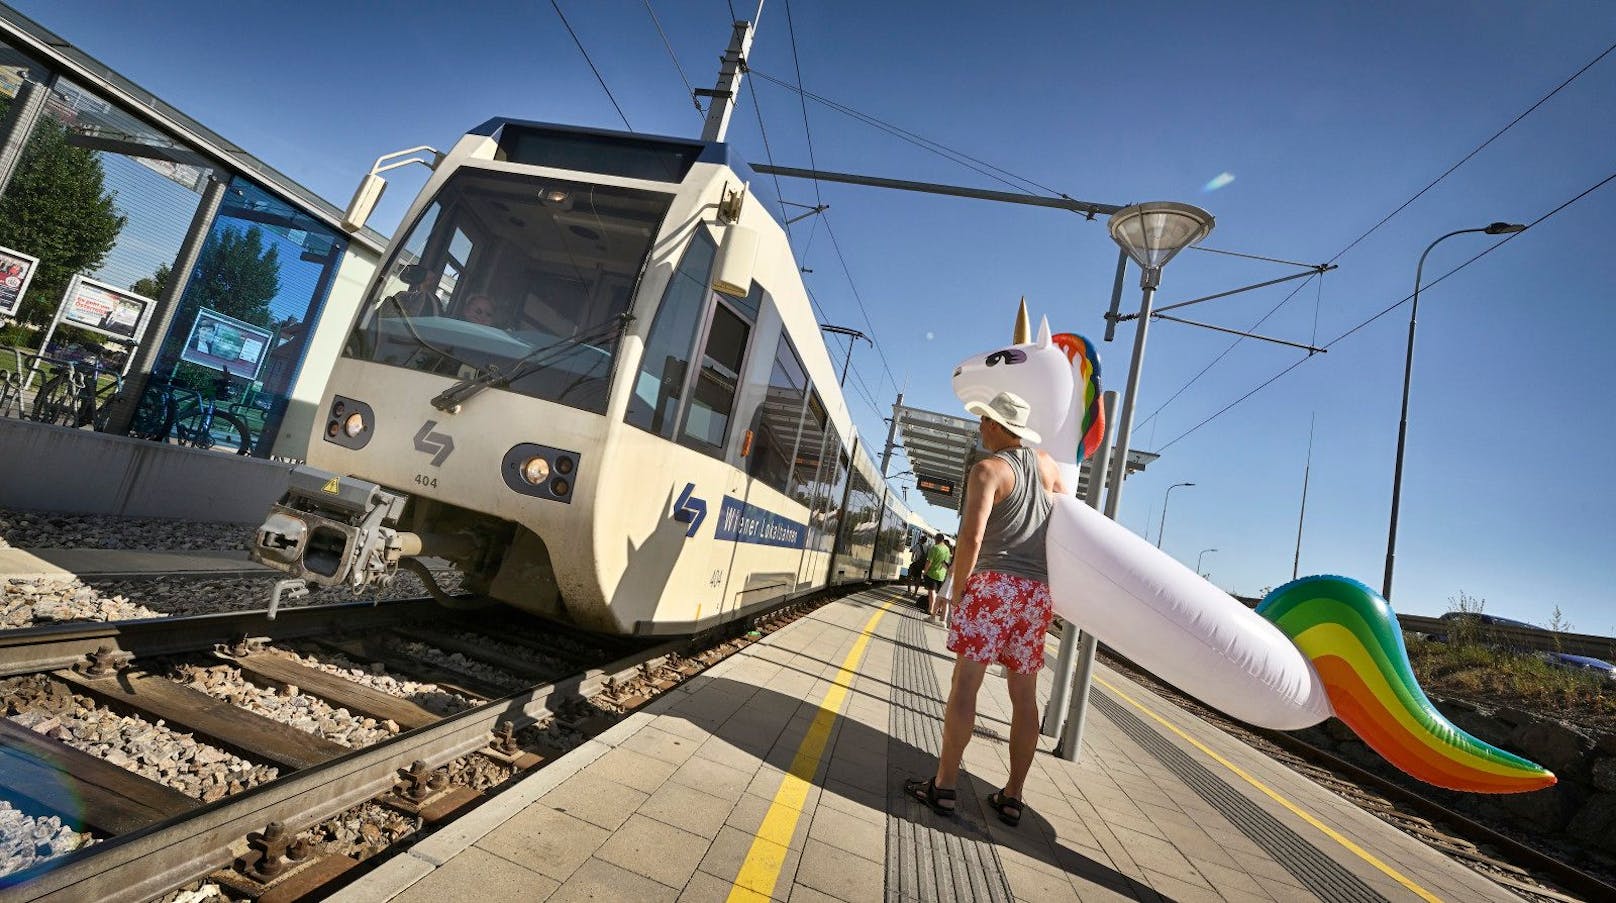 Im Sommer erneuern die Wiener Linien die Gleise auf der Strecke der Badner Bahn. Zwischen 8. August und 4. September ist daher mit Einschränkungen zu rechnen.